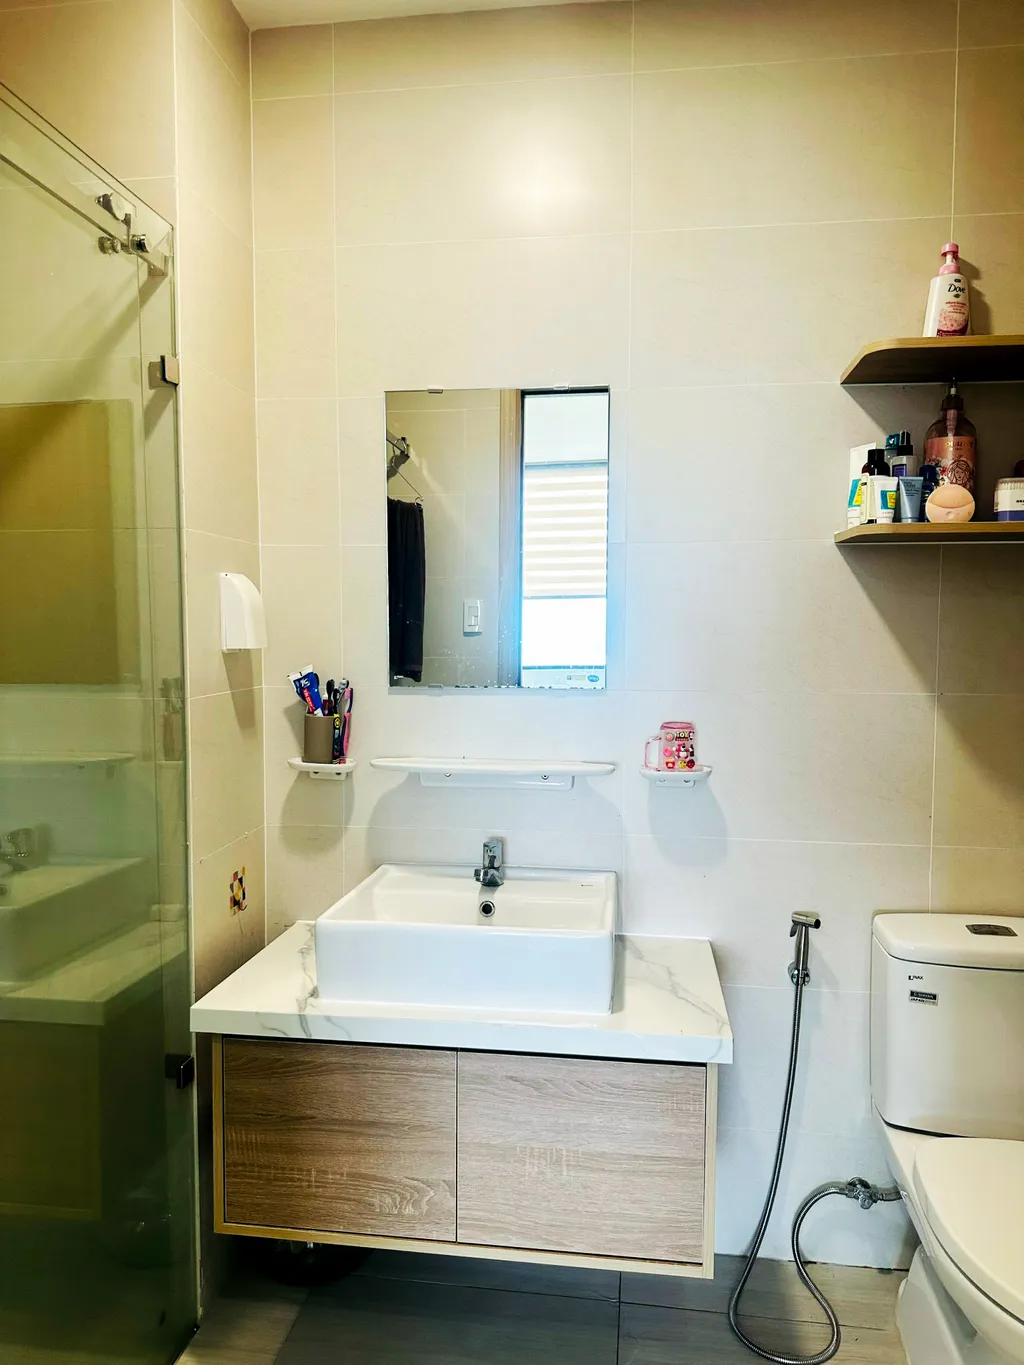 Hoàn thiện nội thất phòng tắm, nhà vệ sinh Căn hộ Thảo Điền Quận 2 mang phong cách Japandi